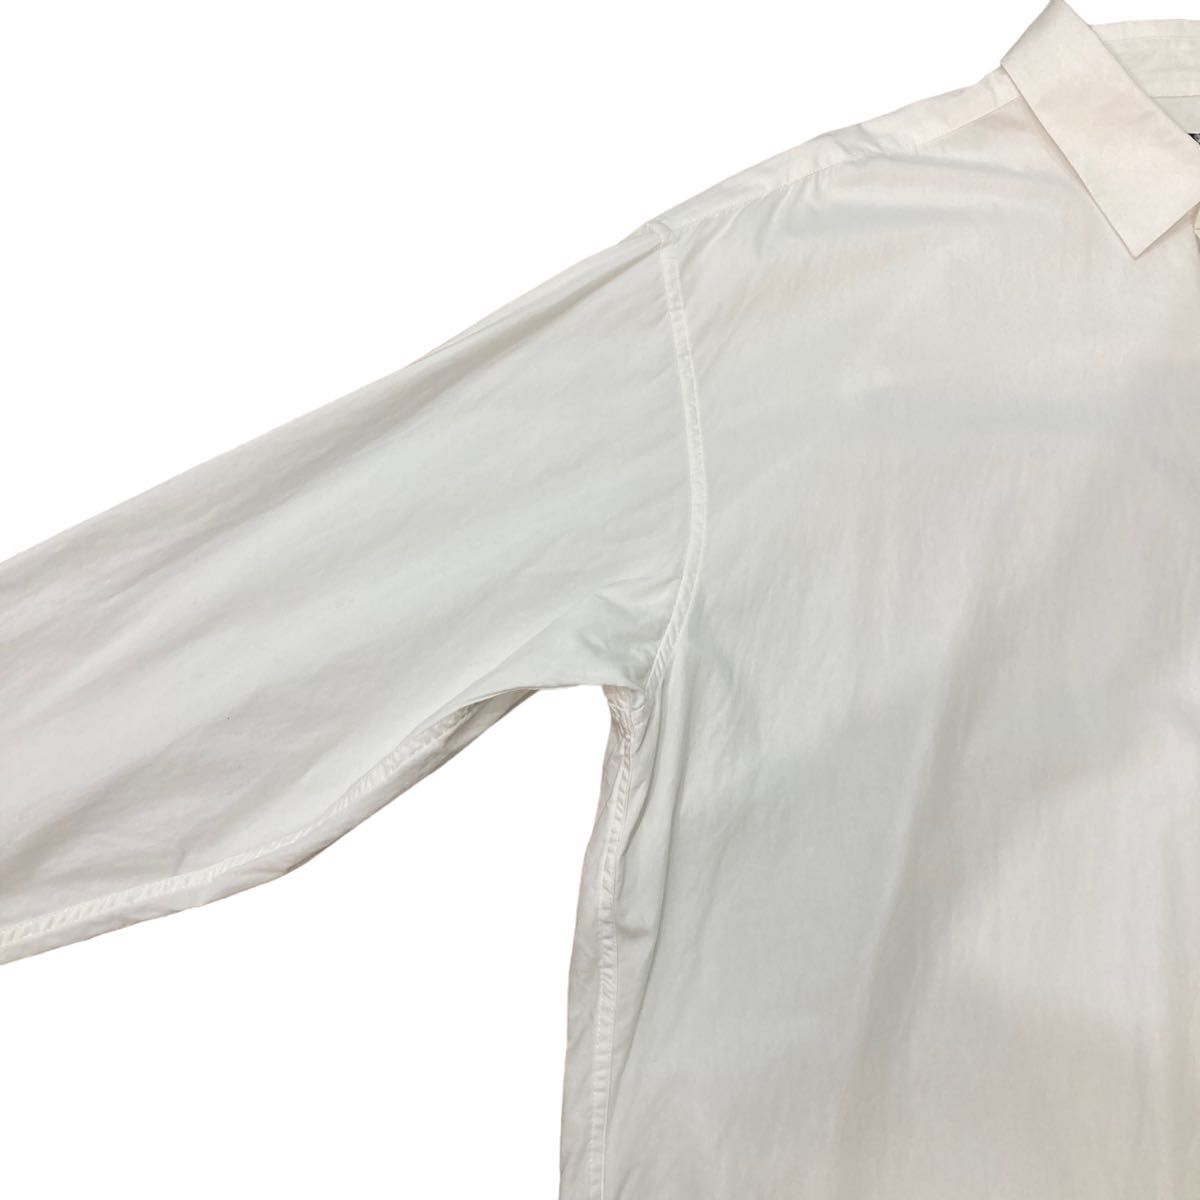 【コンファーム】 CONFIRM  バックプリントルーズオーバサイズシャツ  長袖  ホワイト  ユニセックス  F